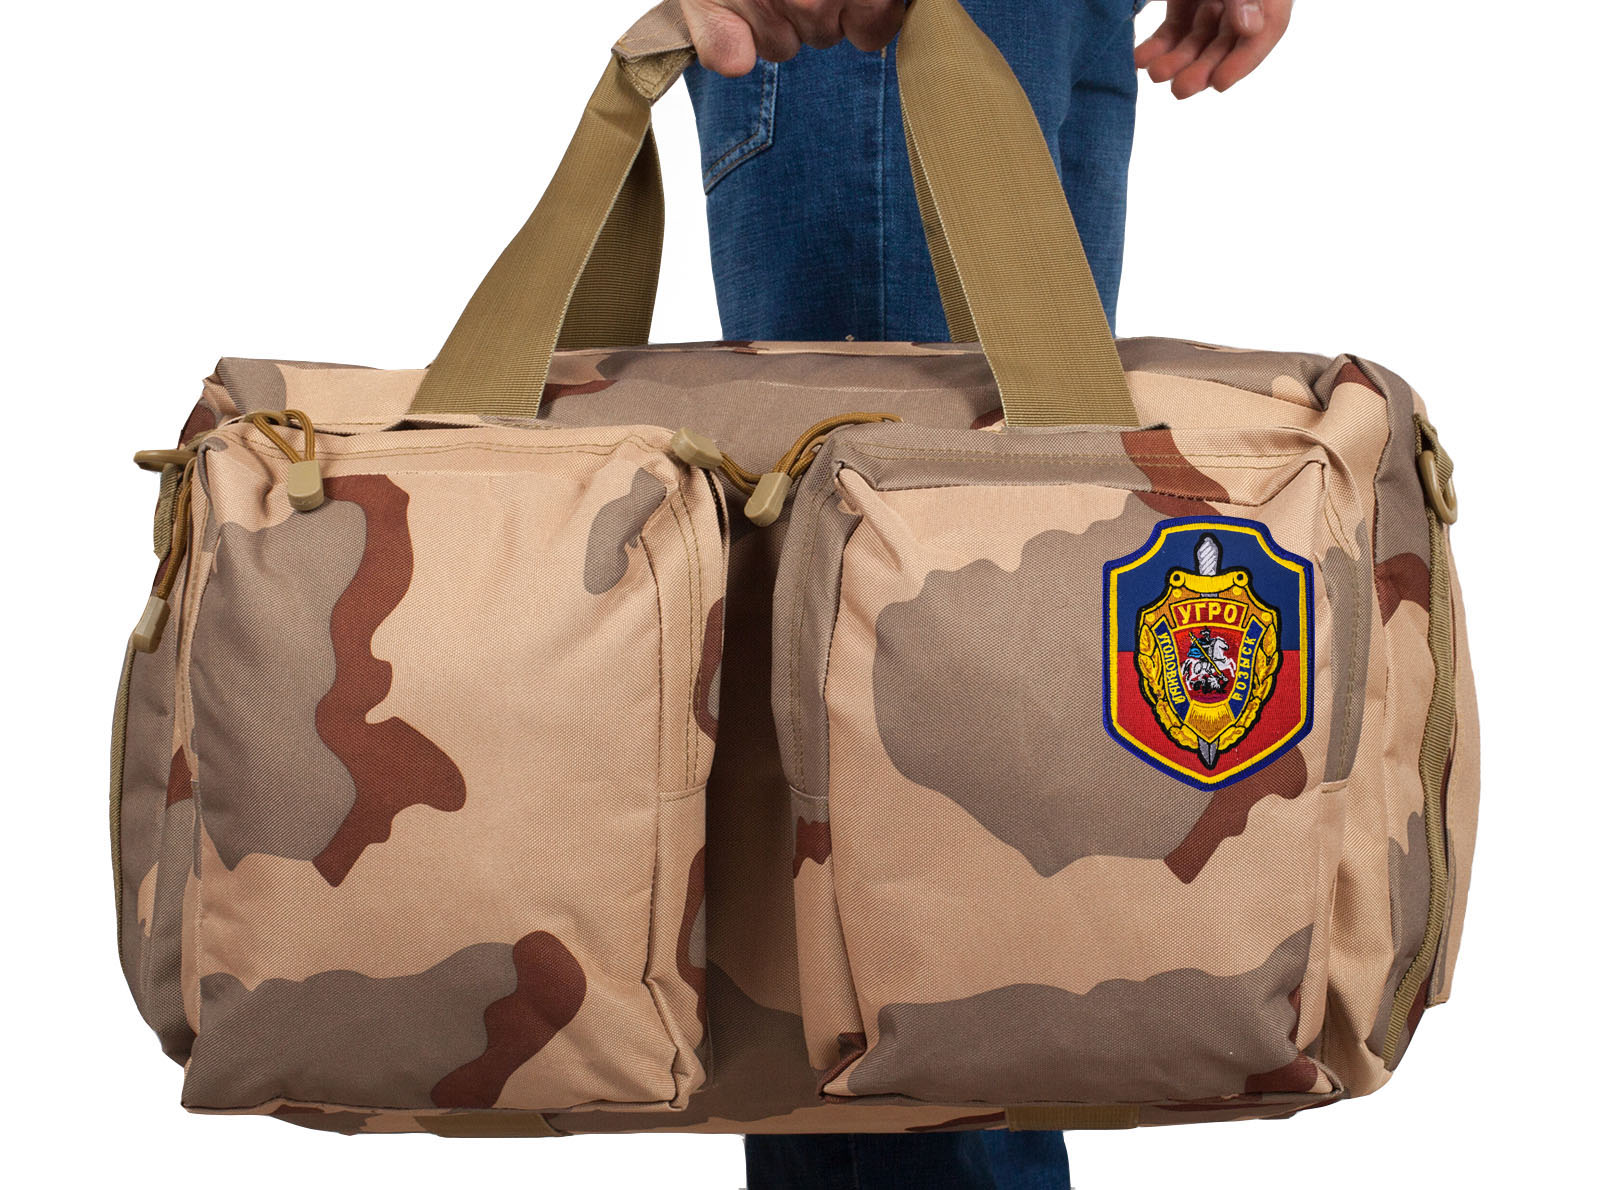 Зачетная военная сумка  с нашивкой УГРО 